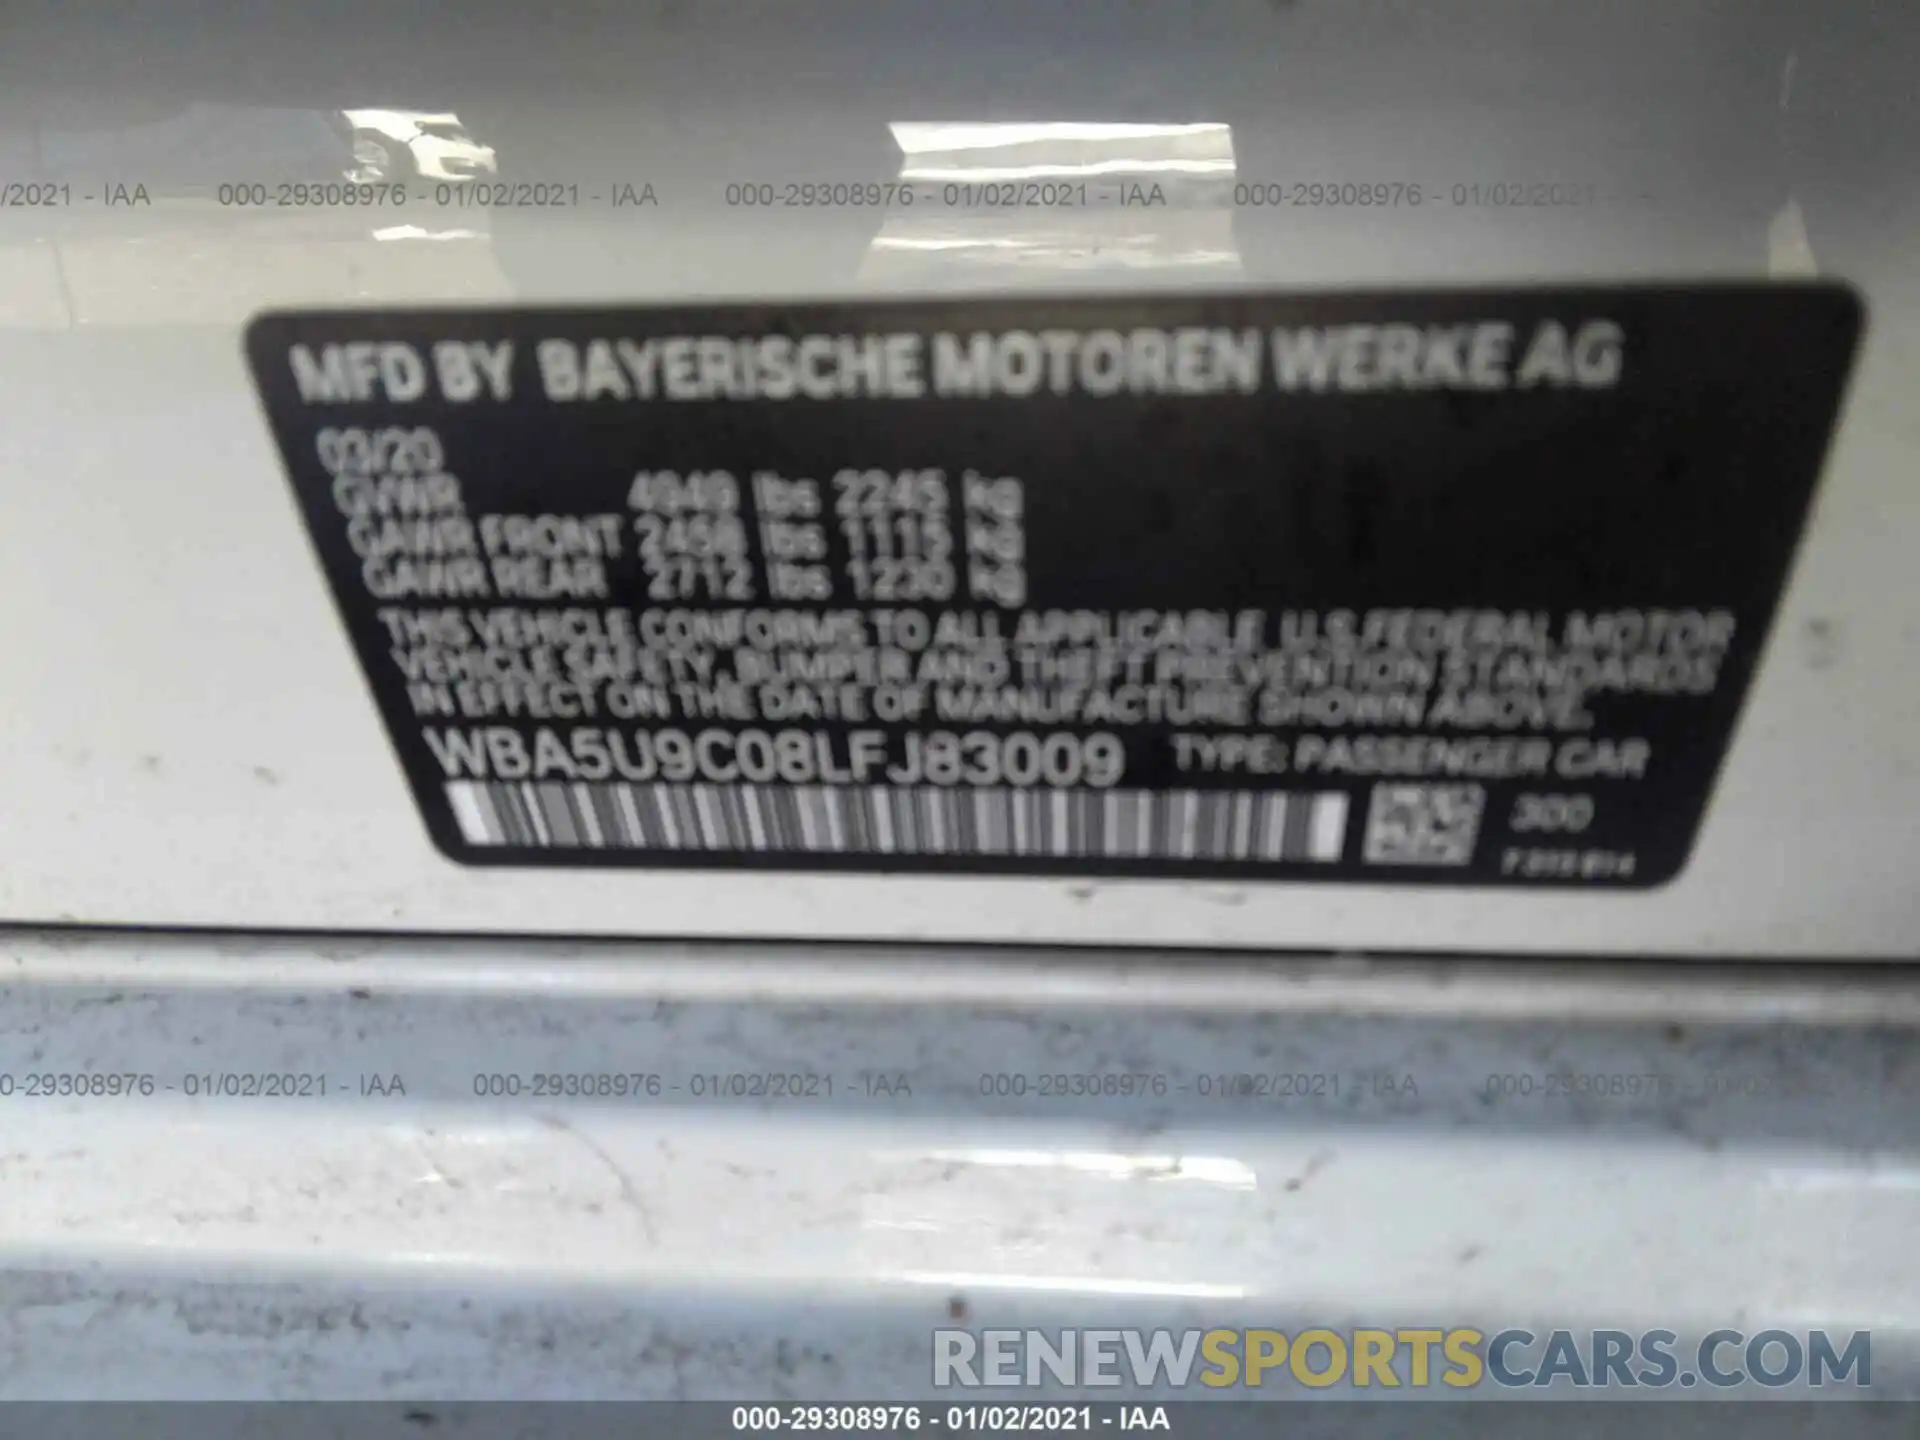 9 Фотография поврежденного автомобиля WBA5U9C08LFJ83009 BMW 3 SERIES 2020